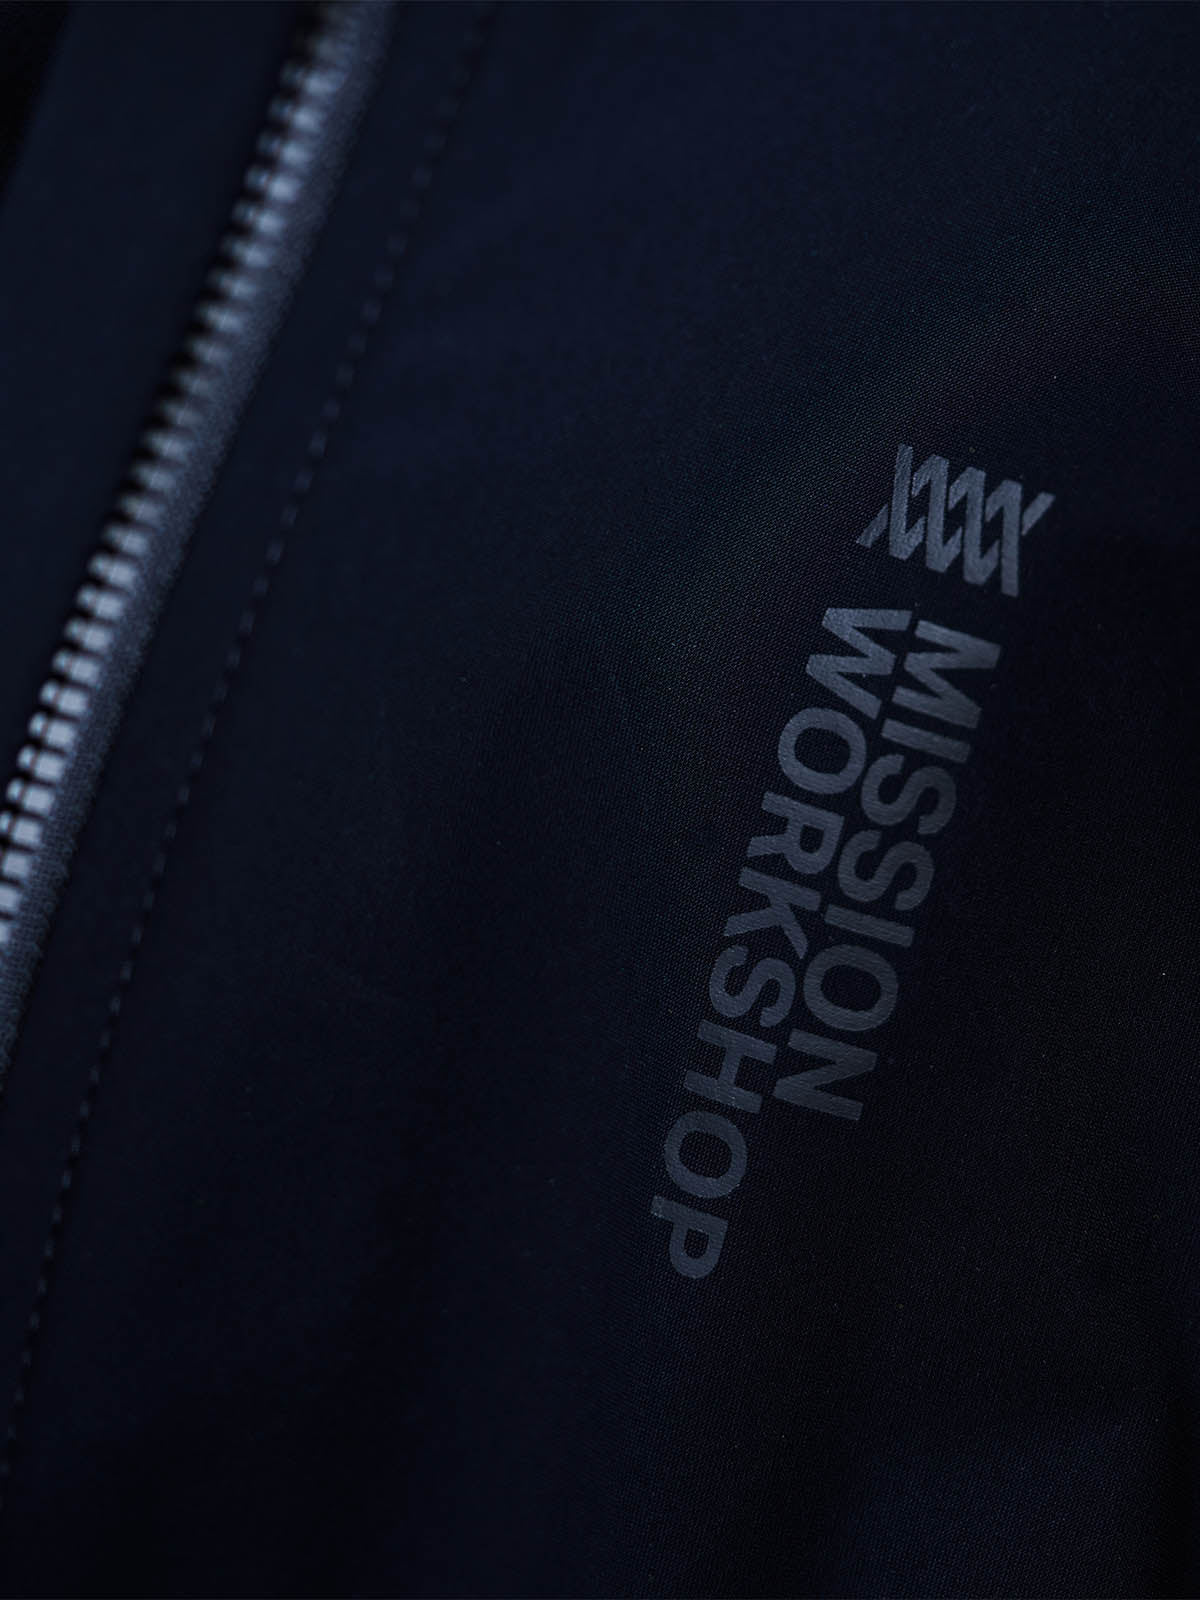 Mission Pro Jersey Women's by Mission Workshop - Weerbestendige tassen & technische kleding - San Francisco & Los Angeles - Gemaakt om te doorstaan - Voor altijd gegarandeerd